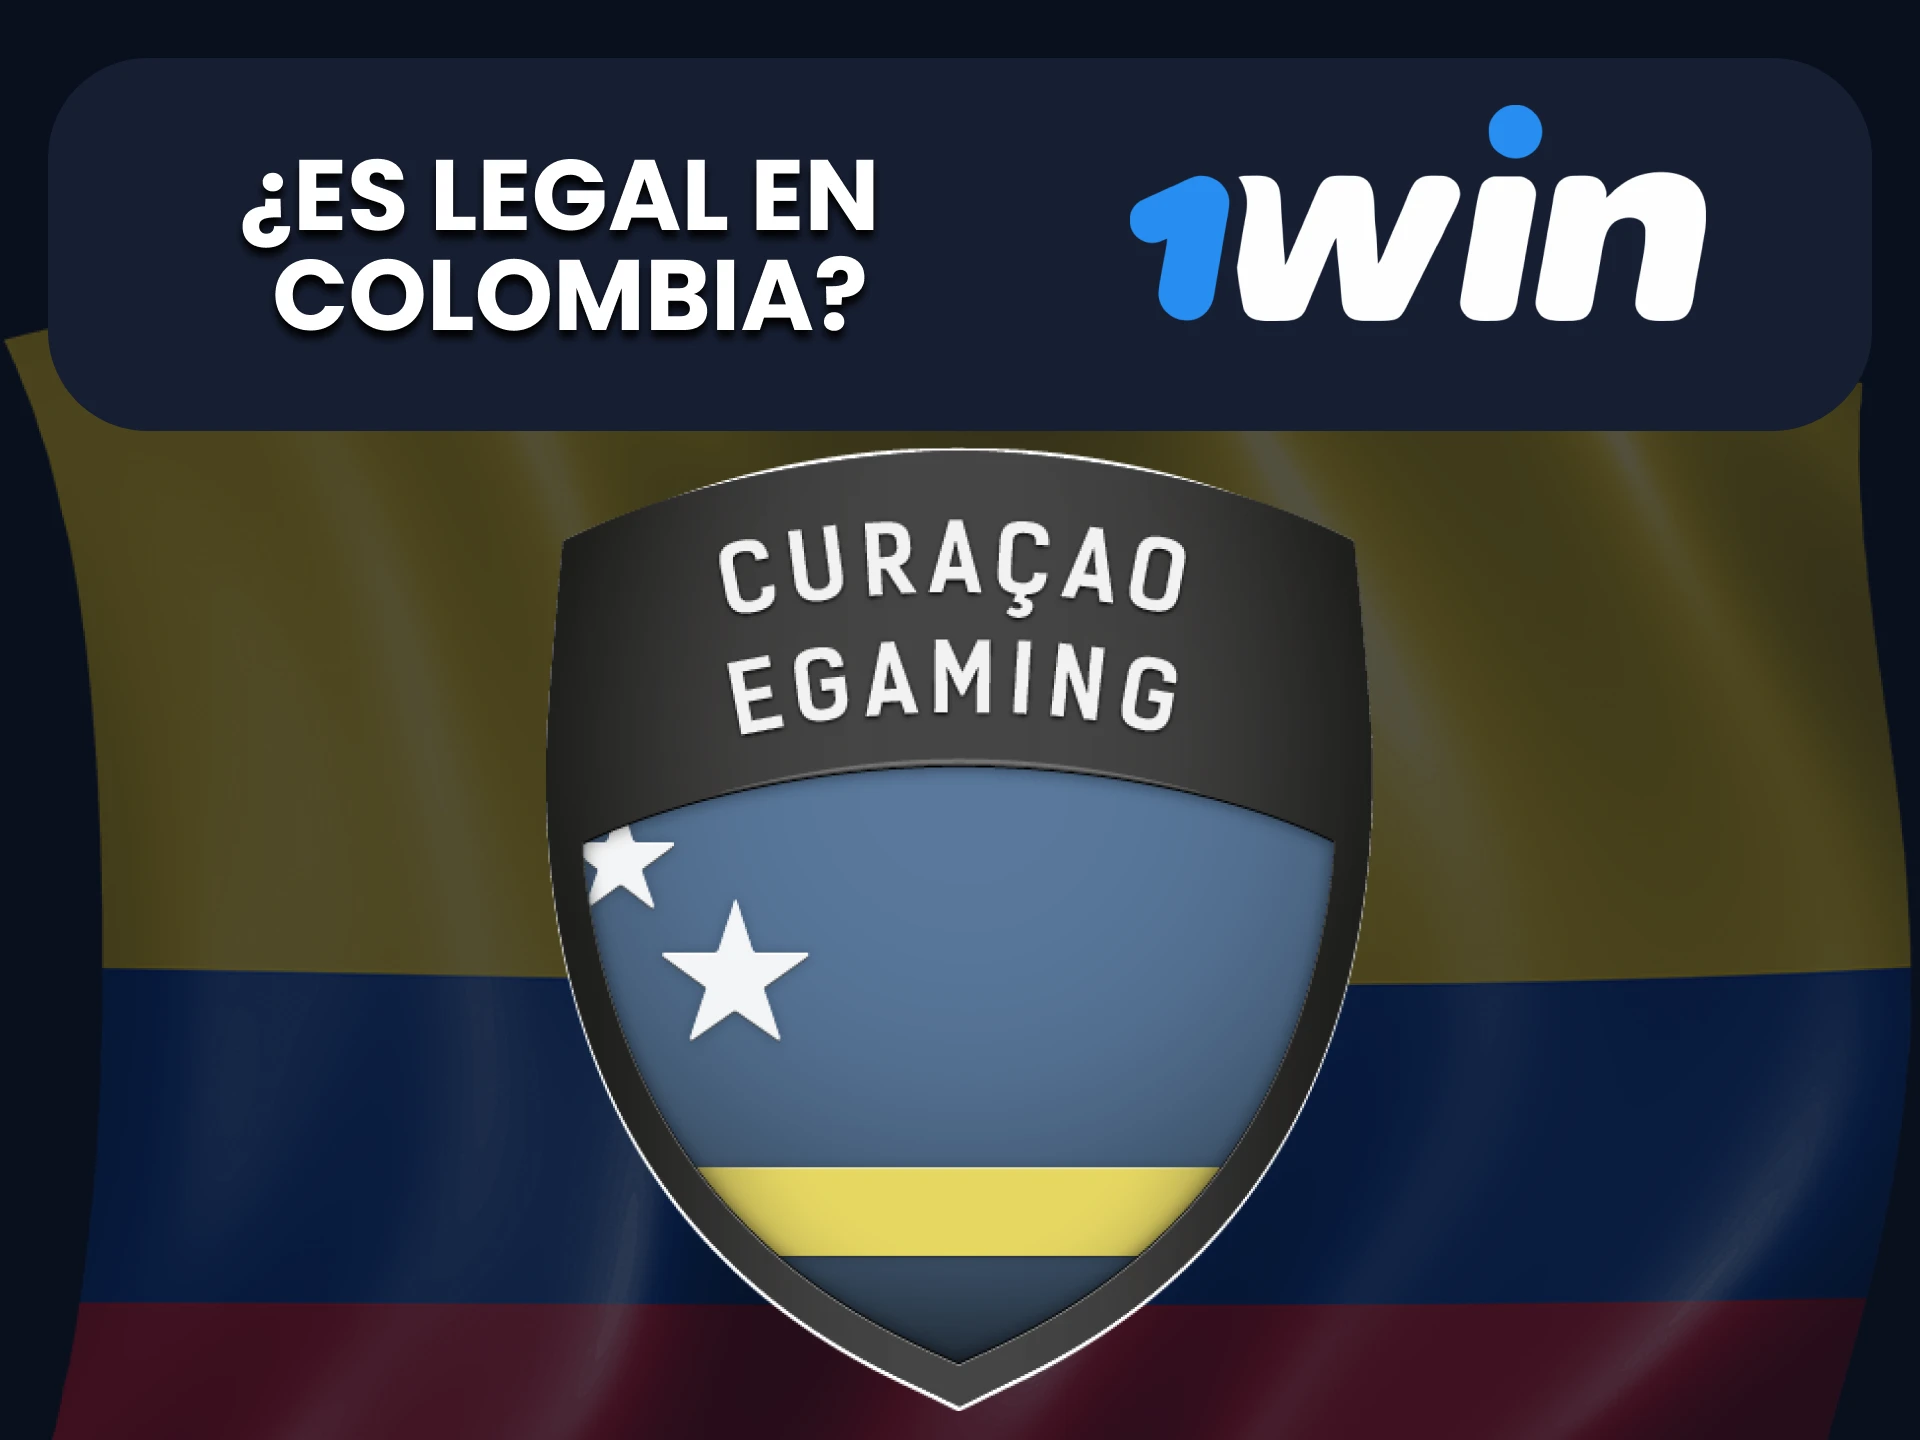 1win es un sitio legal en Colombia.